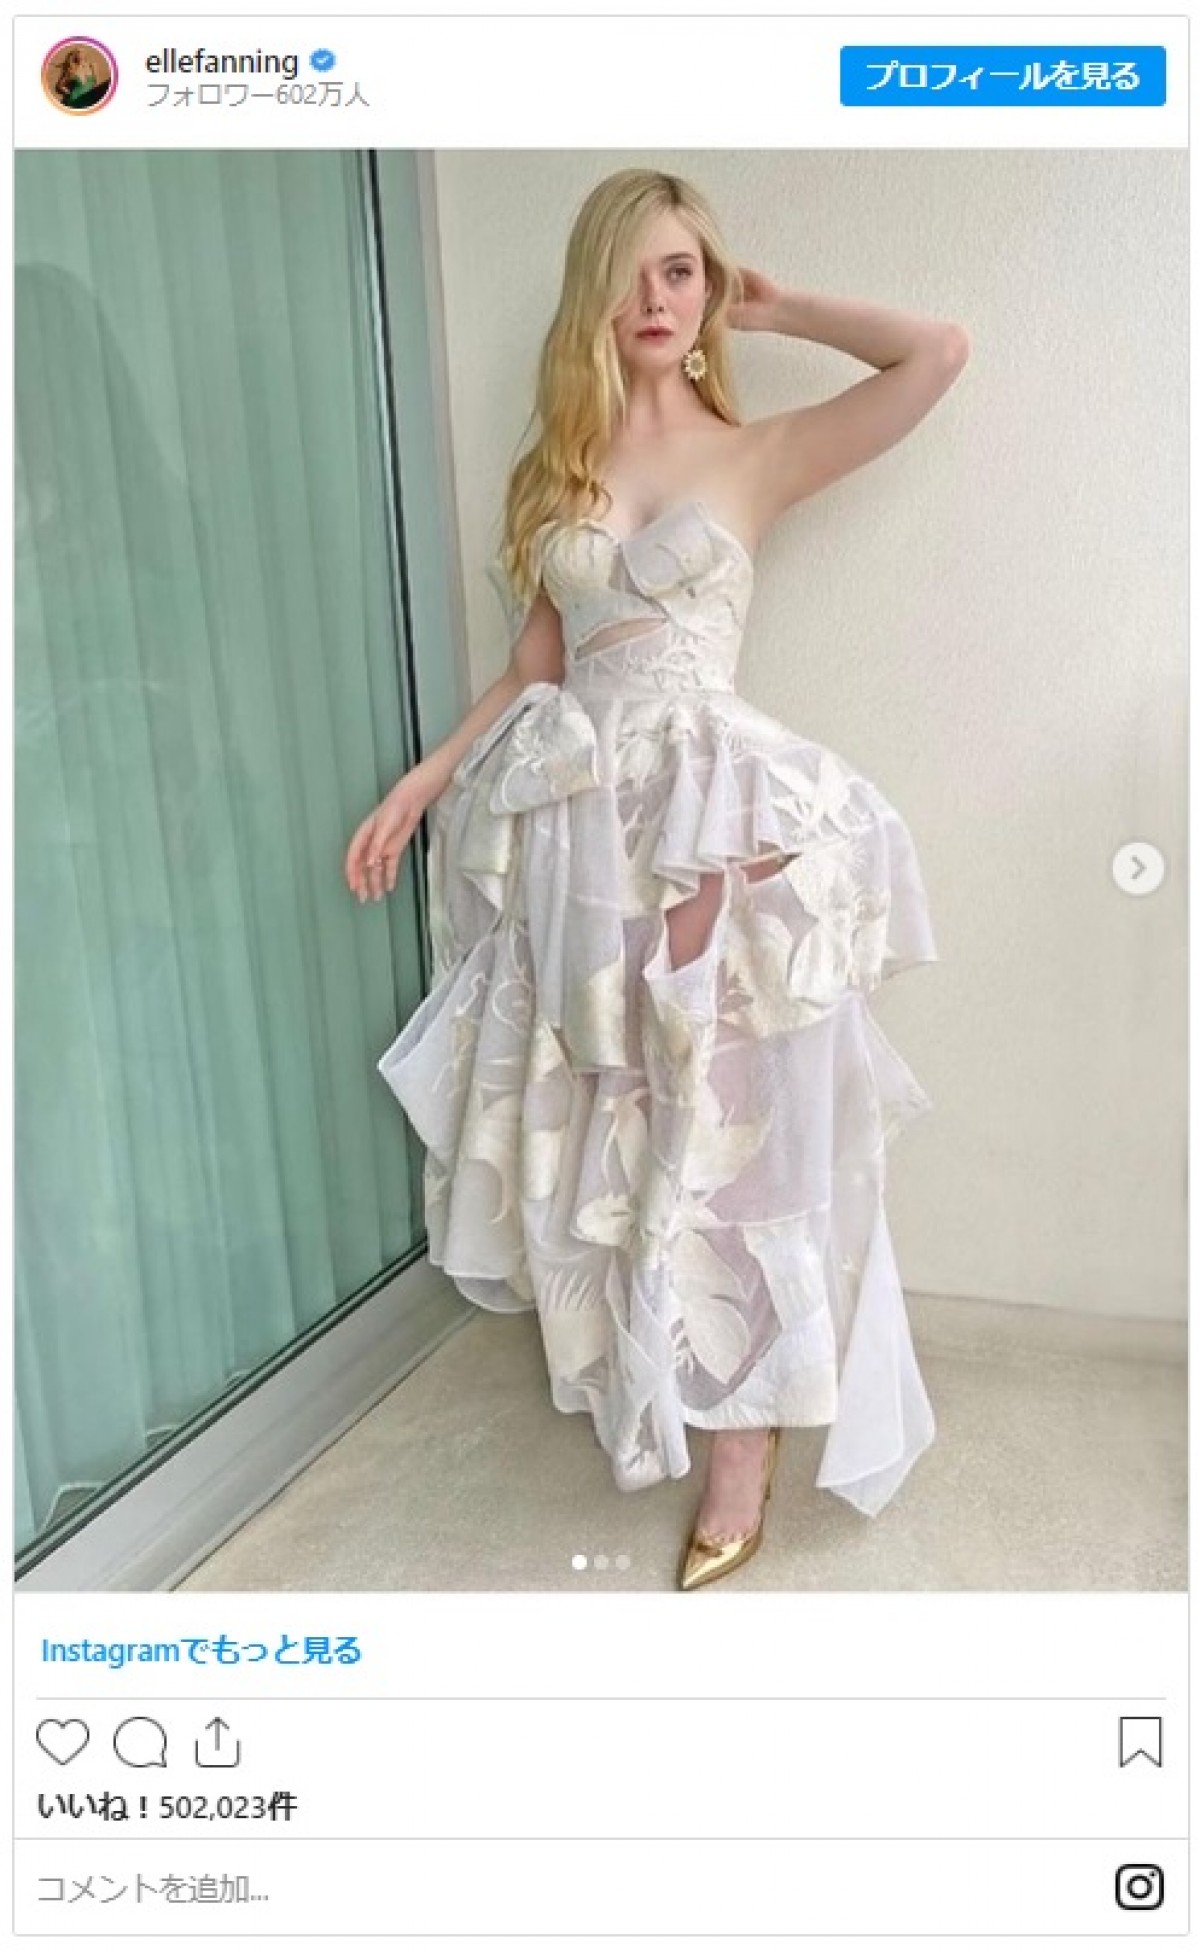 エル・ファニング、美しいアレキサンダー・マックイーンのドレス姿を連続披露